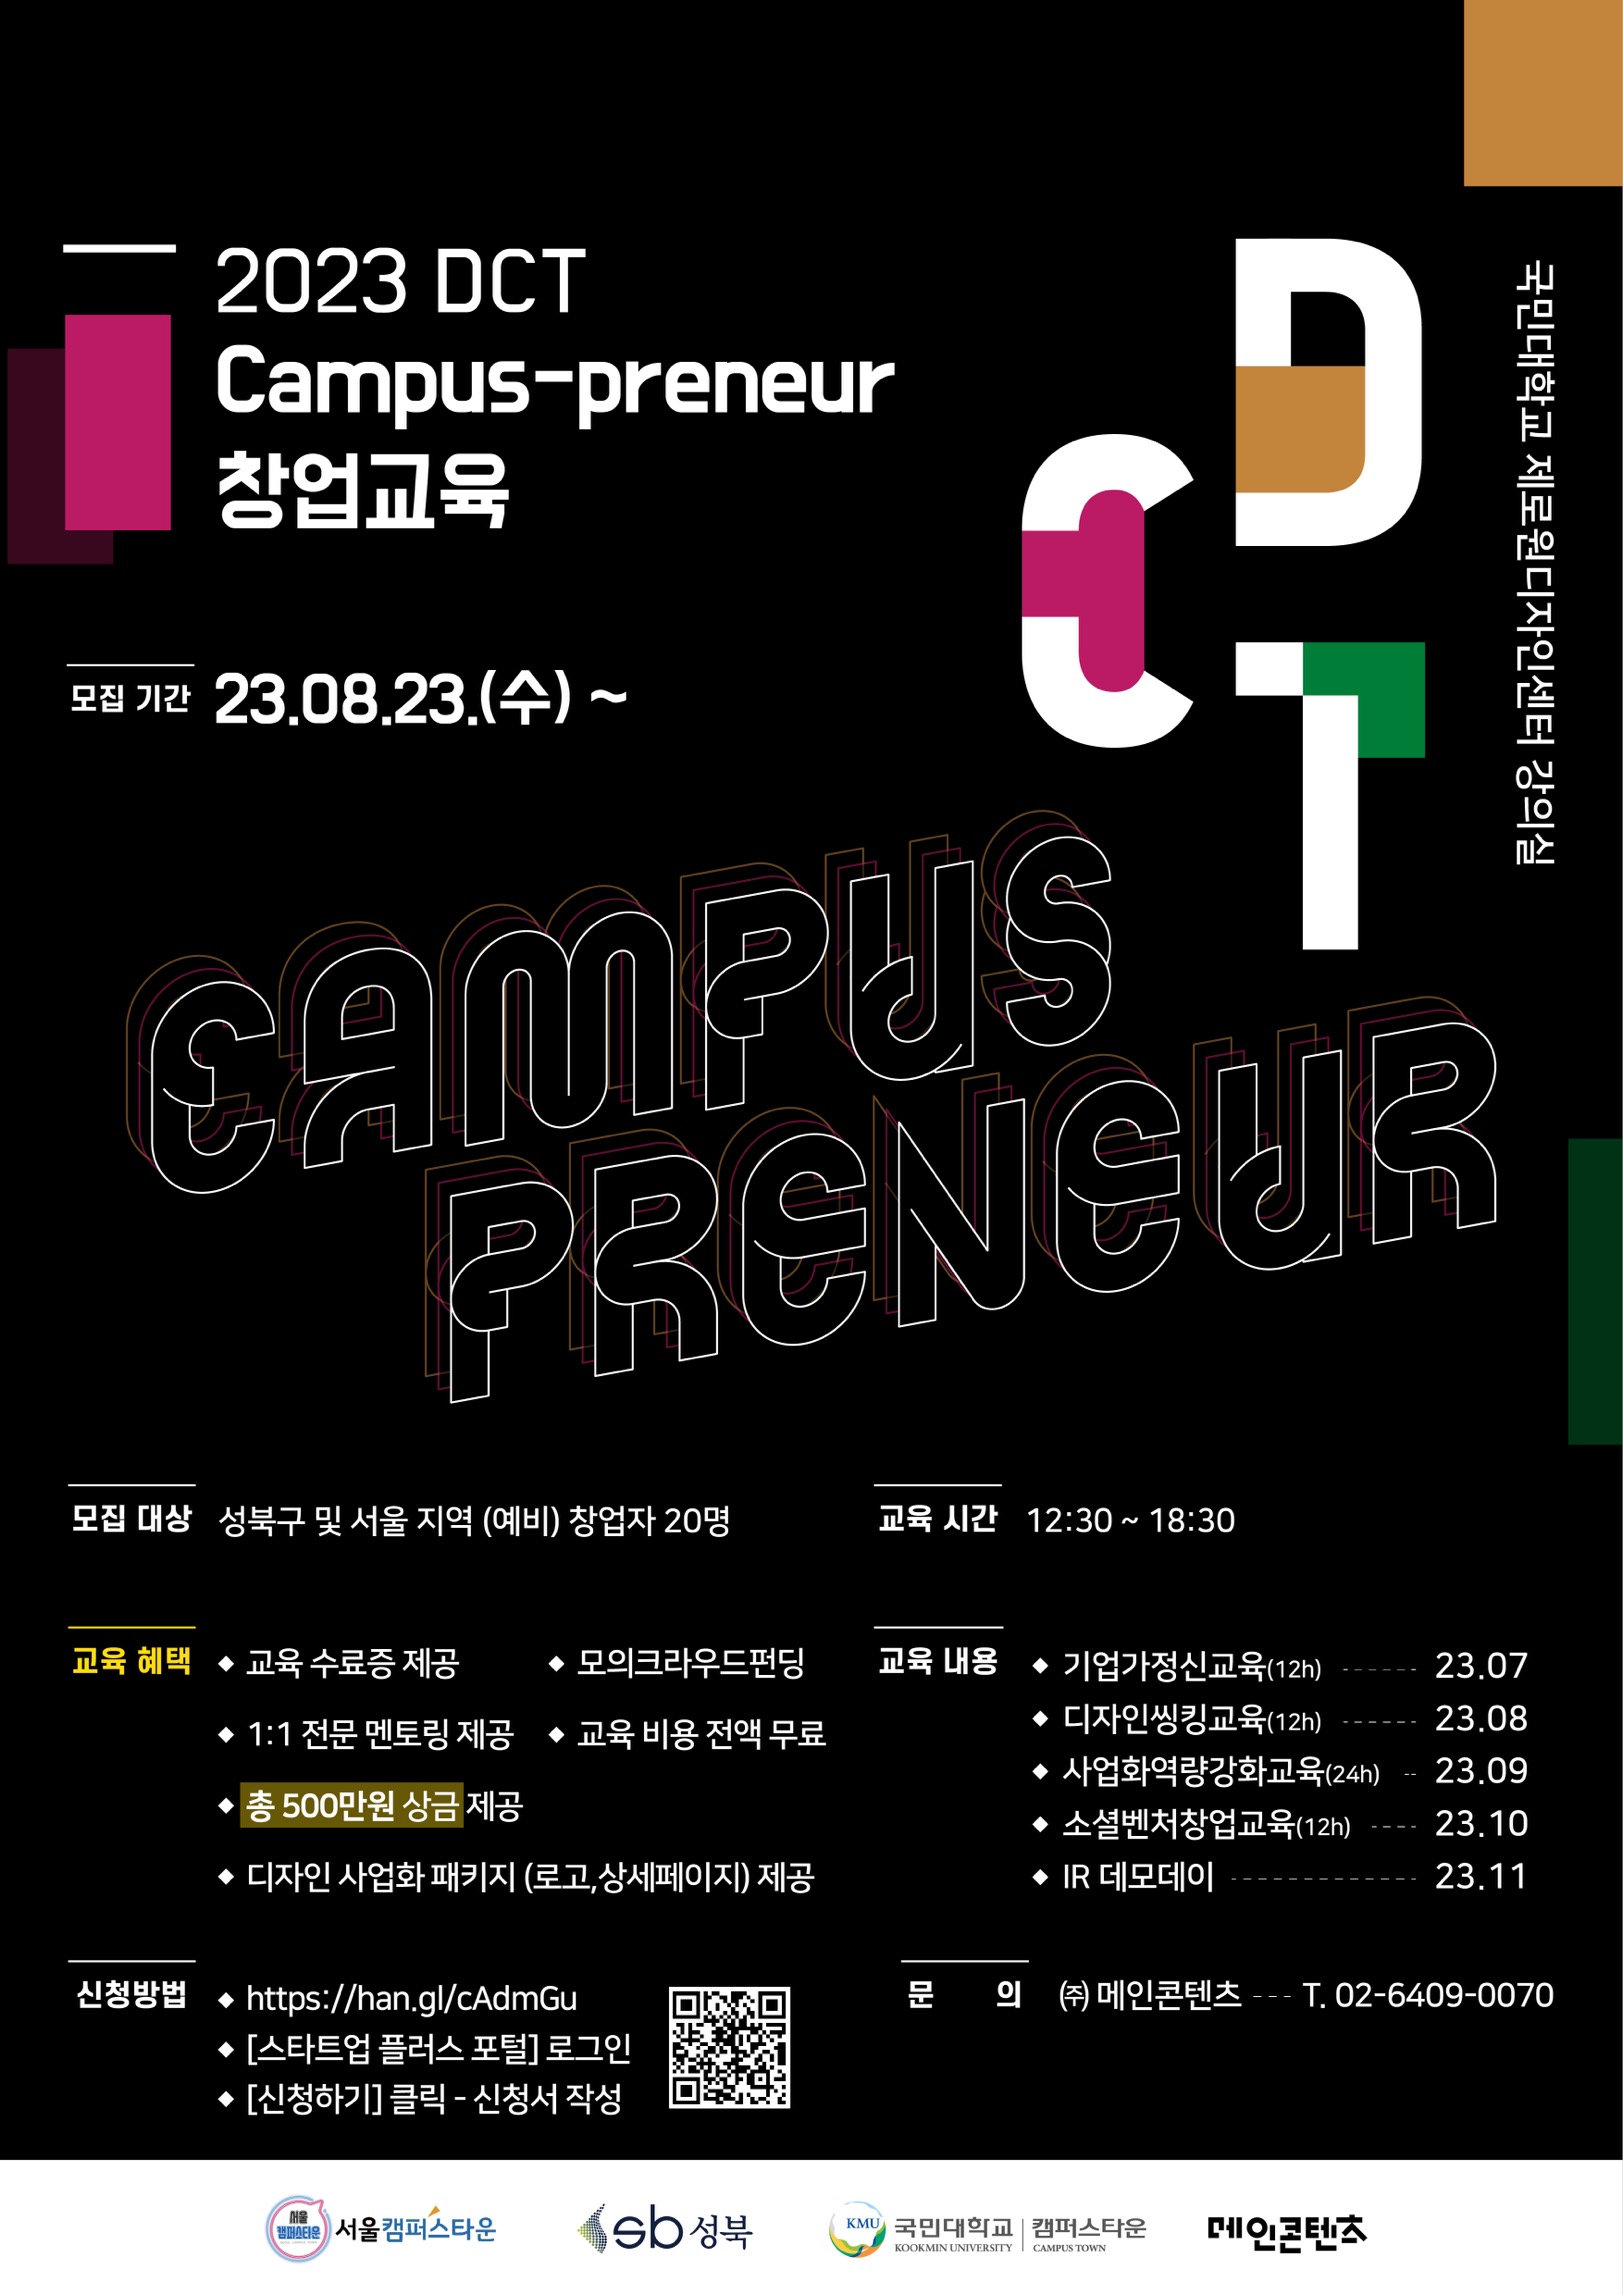 [국민대학교 캠퍼스타운] DCT Campus-preneur 창업교육 추가모집